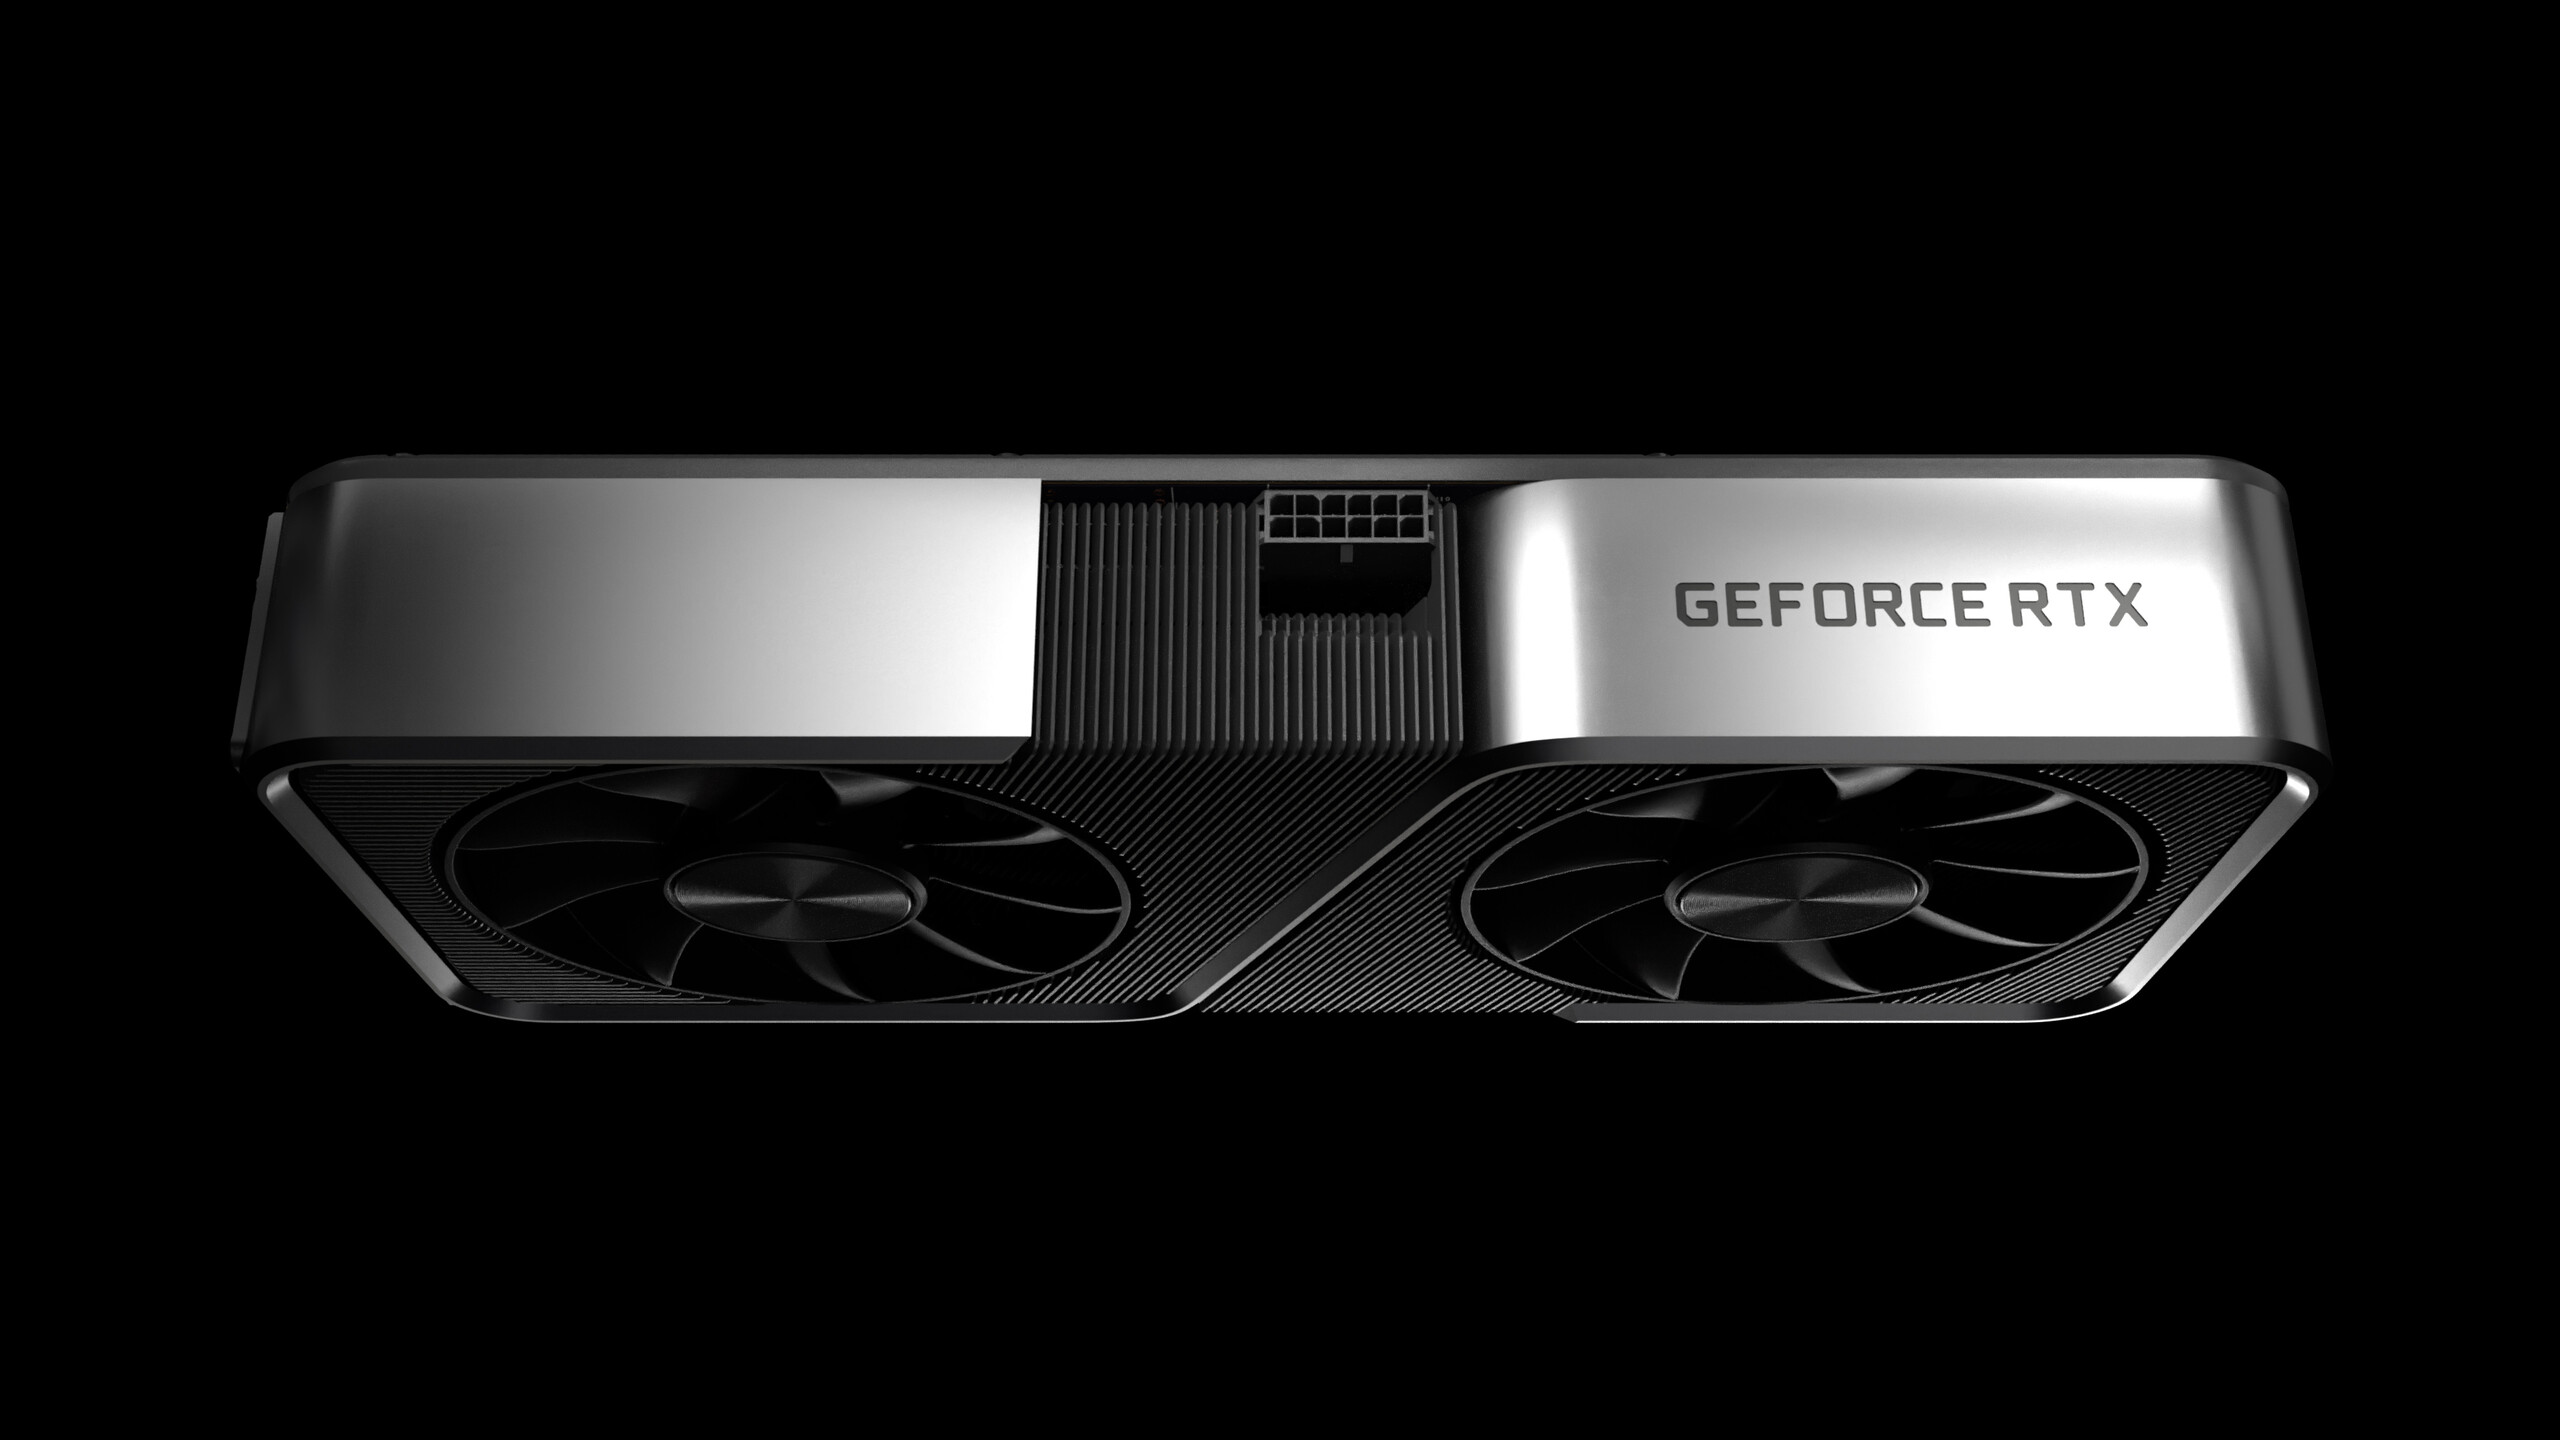 NVIDIA GeForce RTX 4060 Ti 8 GB Specs